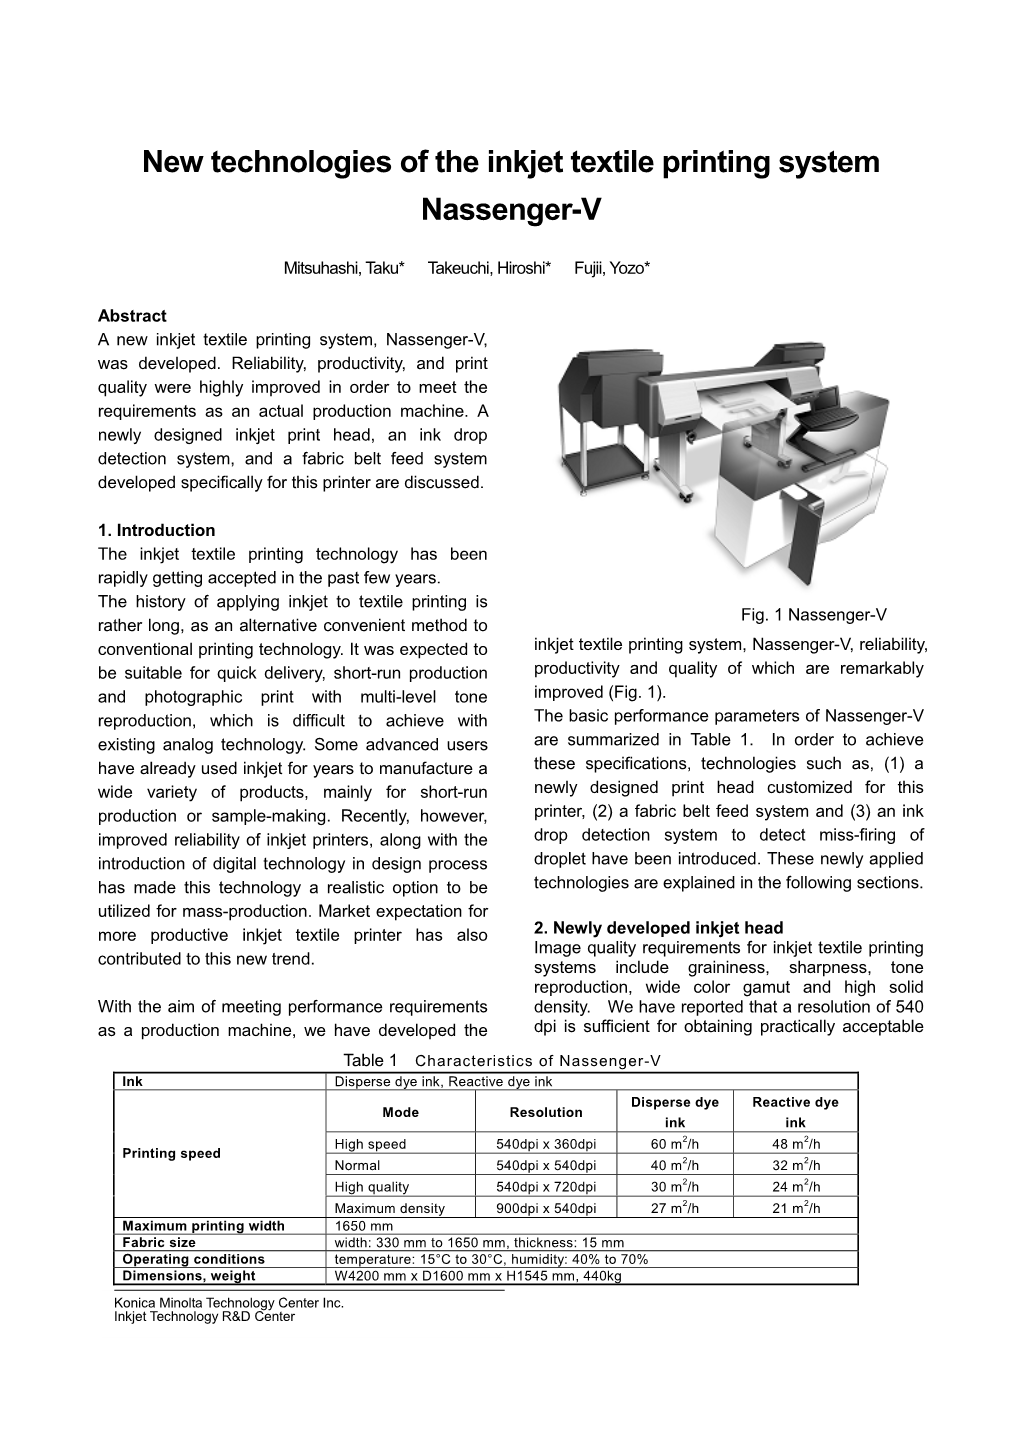 New Technologies of the Inkjet Textile Printing System Nassenger-V